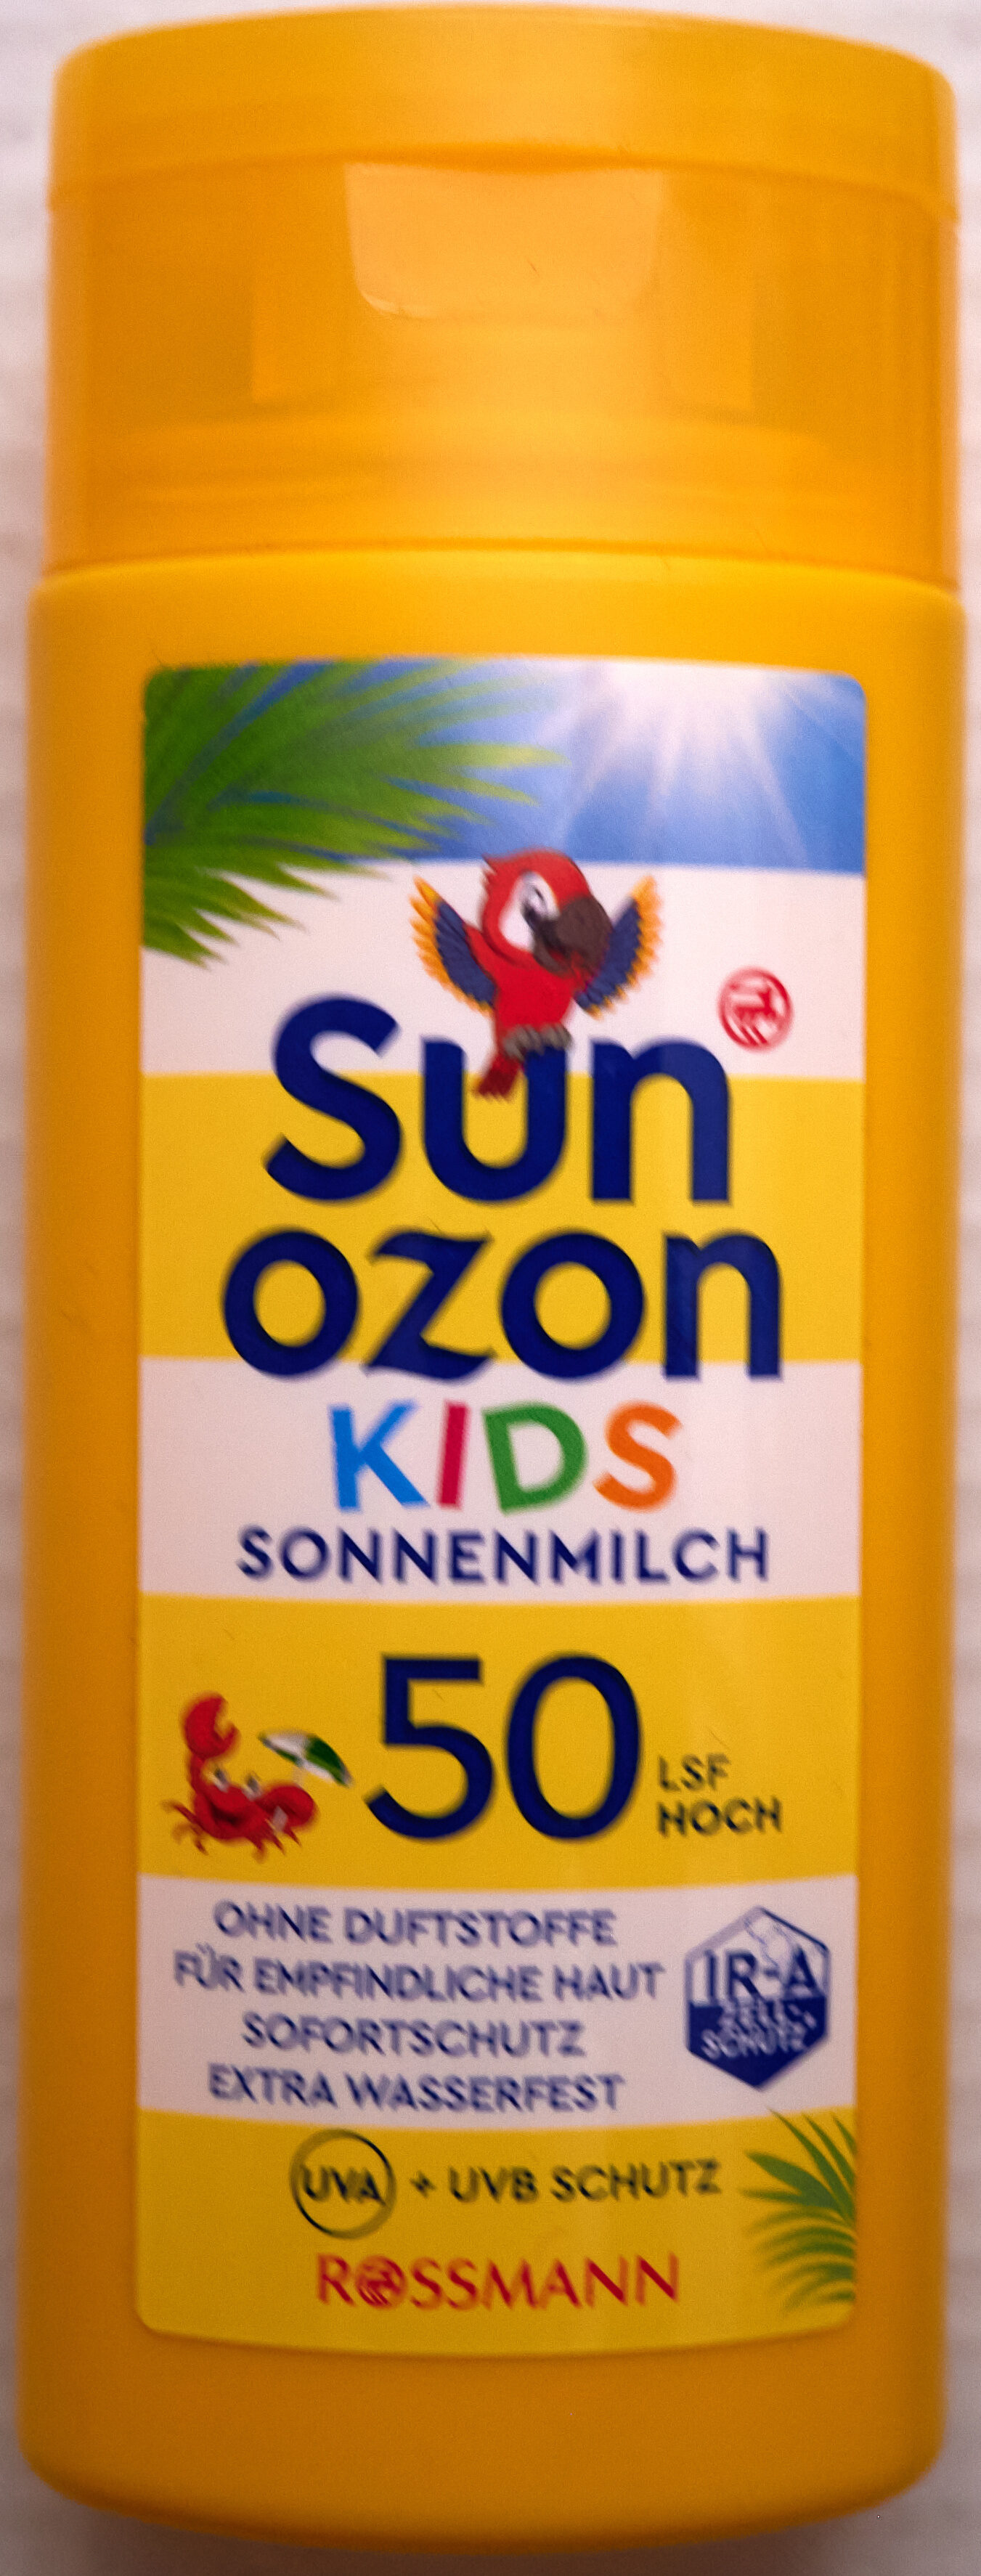 Kids Sonnenmilch LSF 50 hoch - Product - en